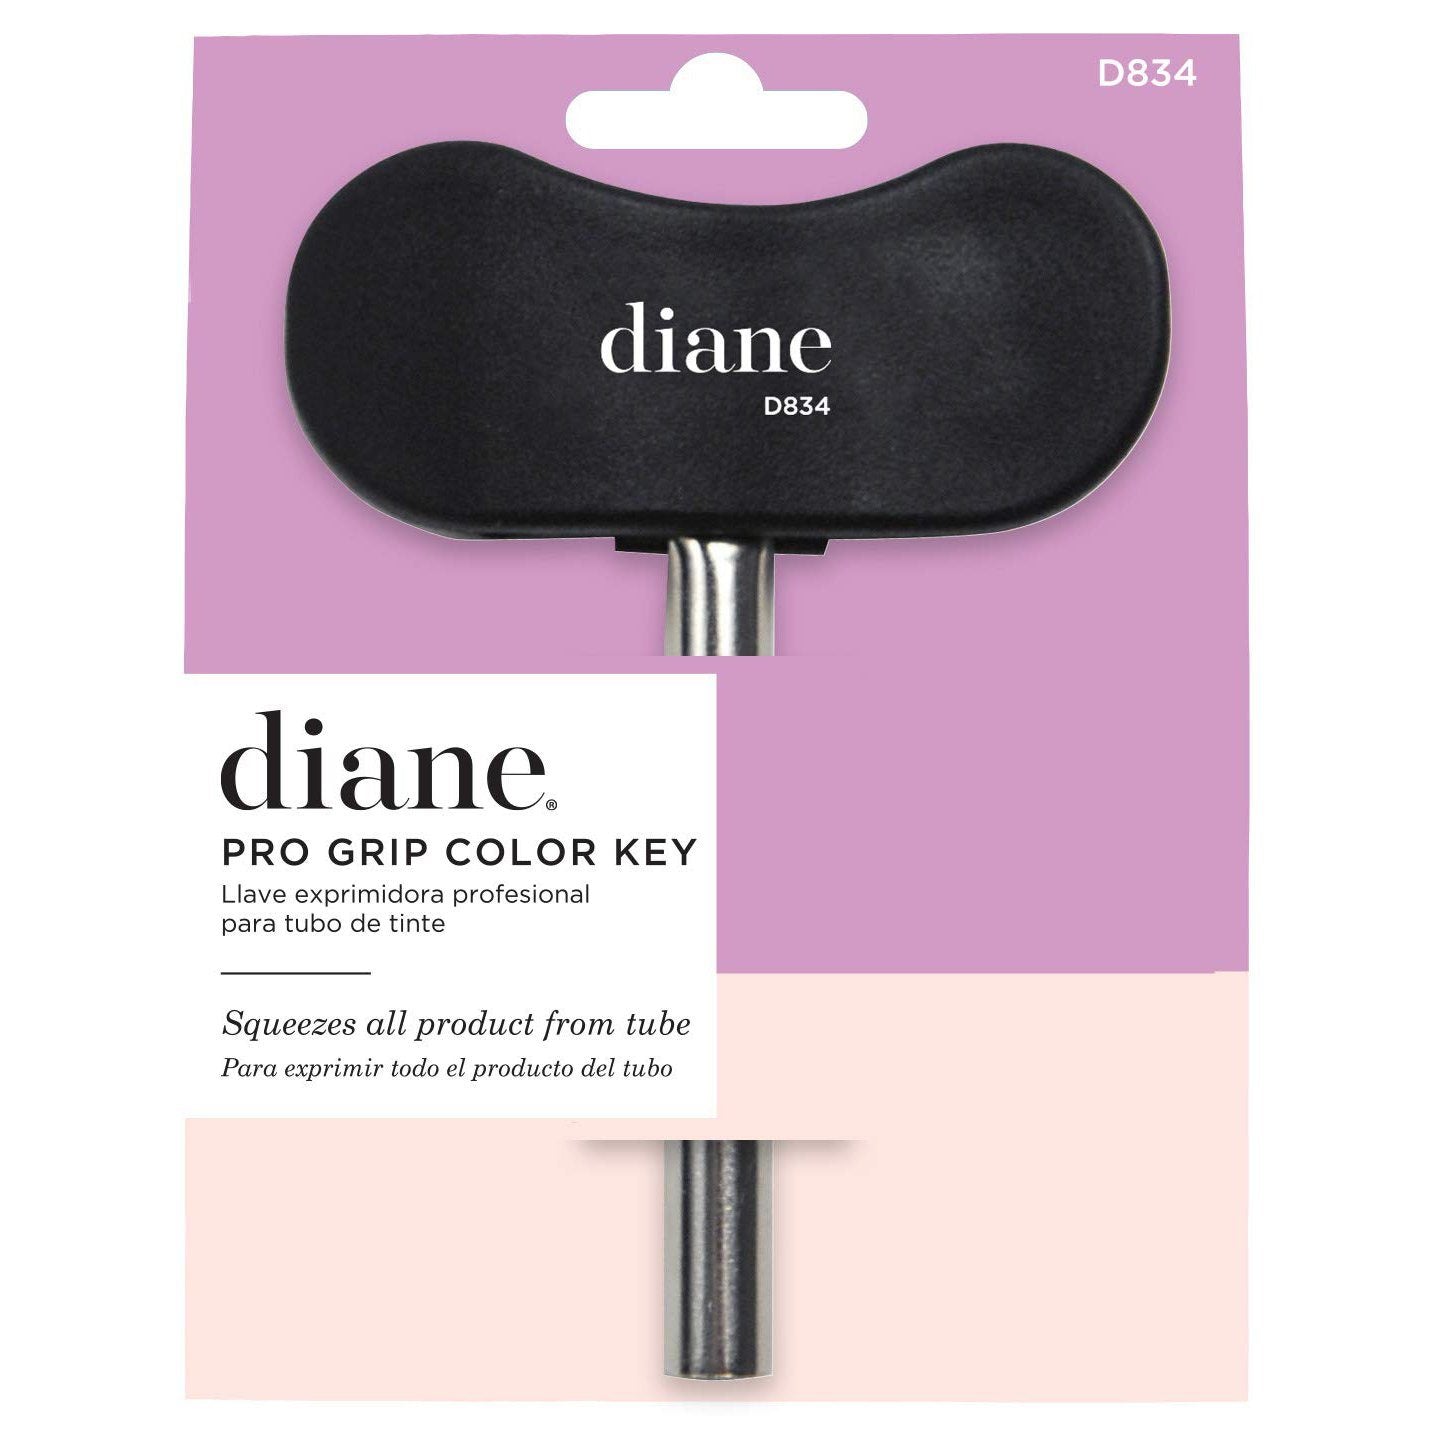 Pro Grip Color Key | D834 HAIR COLORING ACCESSORIES DIANE 